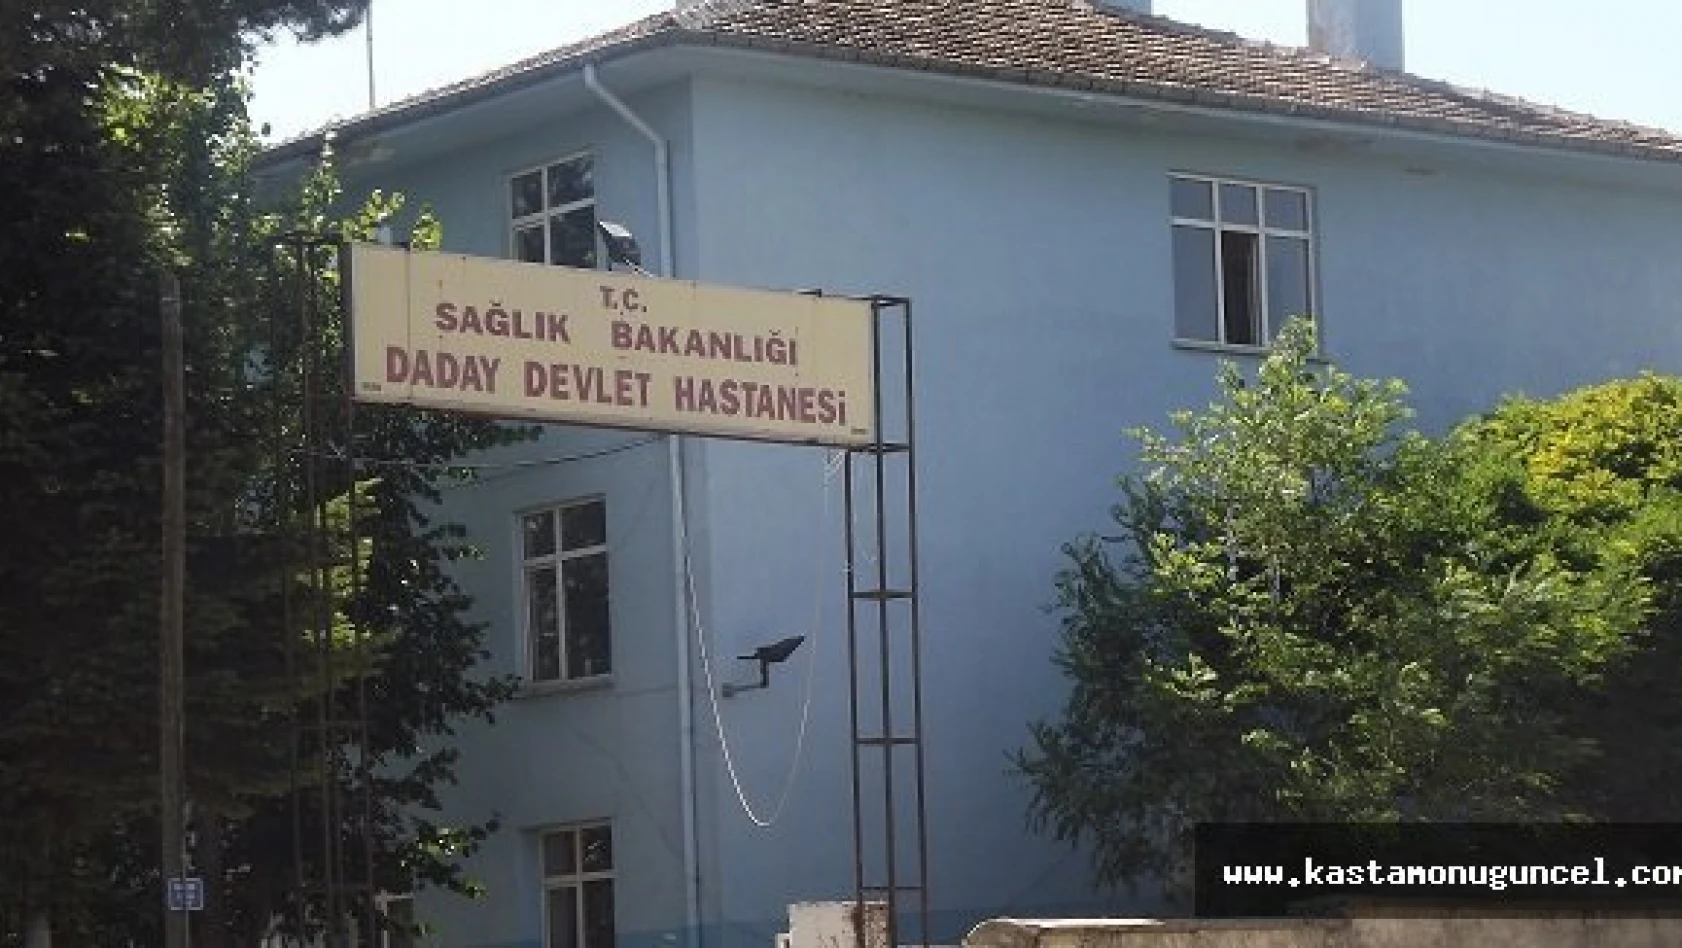 Eski Daday Devlet Hastanesi Resmen Satılık